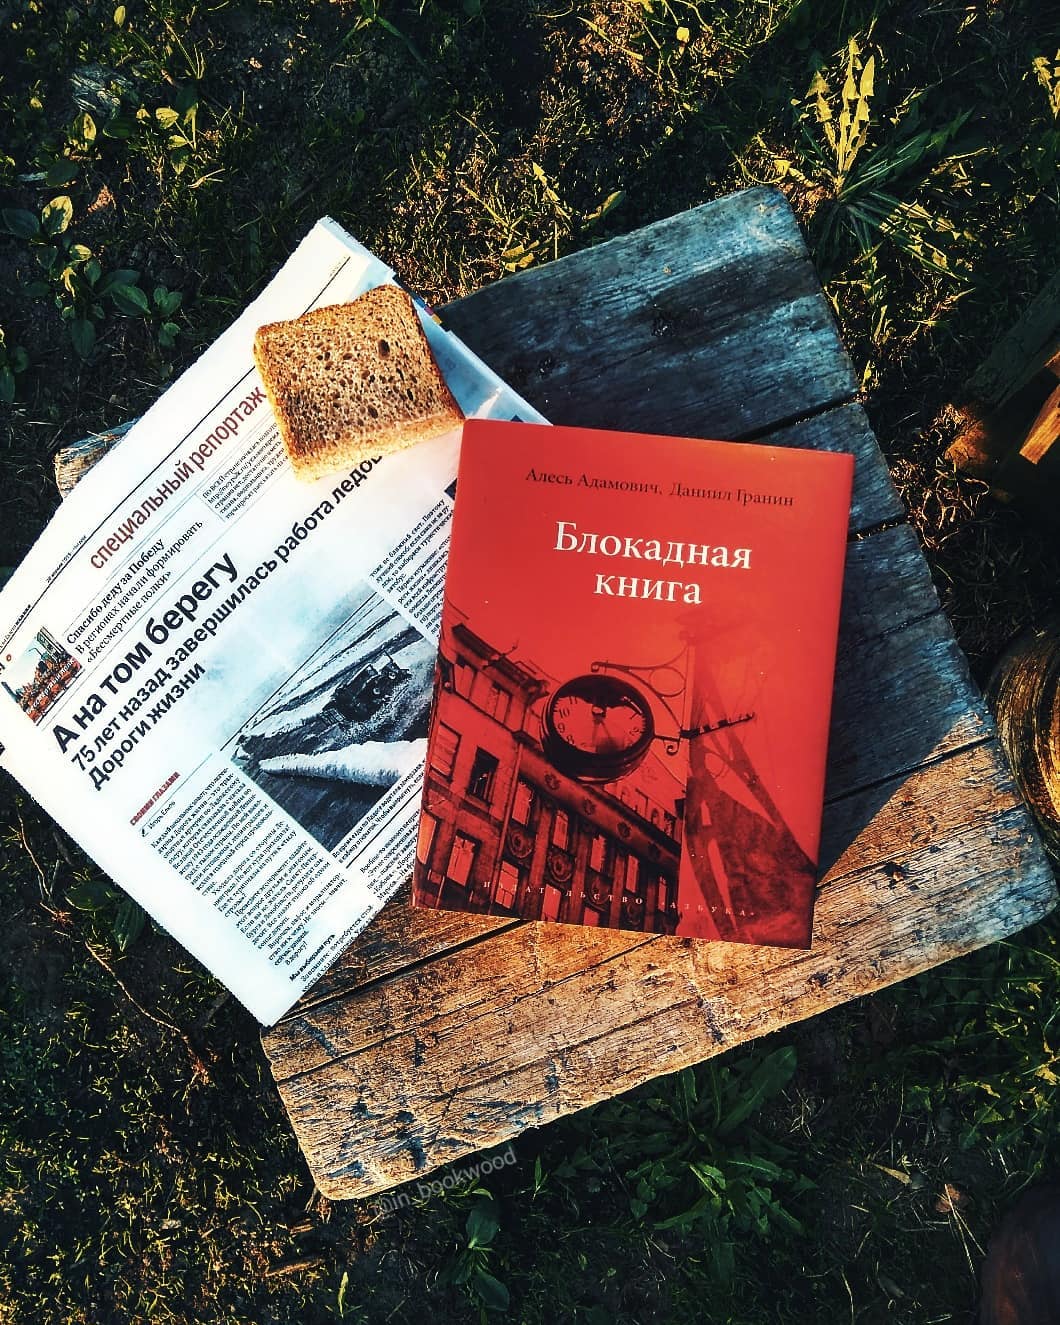 Обзор книги «Блокадная книга» авторов Алесь Адамович, Даниил Гранин